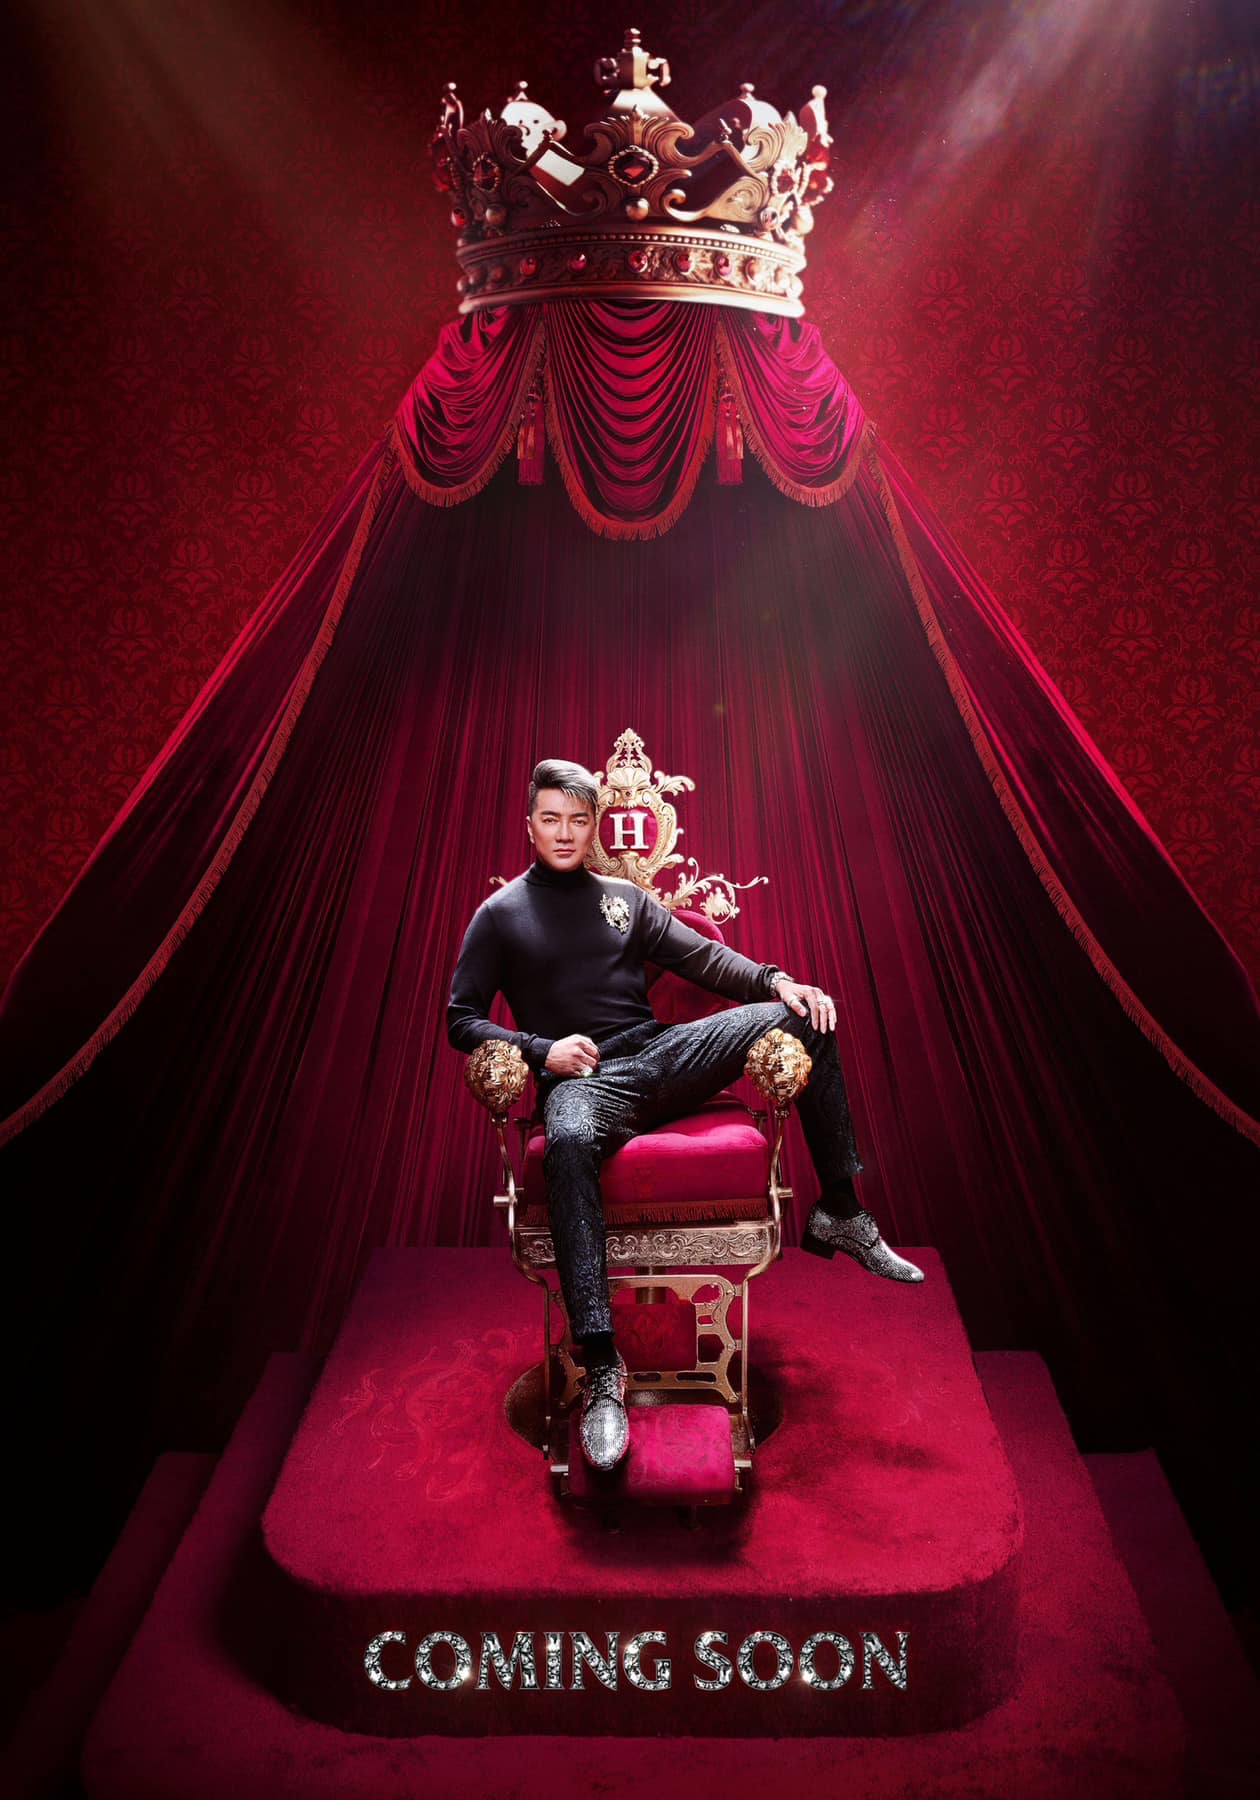 'Xưng vua” và ngồi 'ngai vàng' bị khán giả phản ứng, Đàm Vĩnh Hưng lên tiếng: “Đó là ghế cắt tóc' - ảnh 1